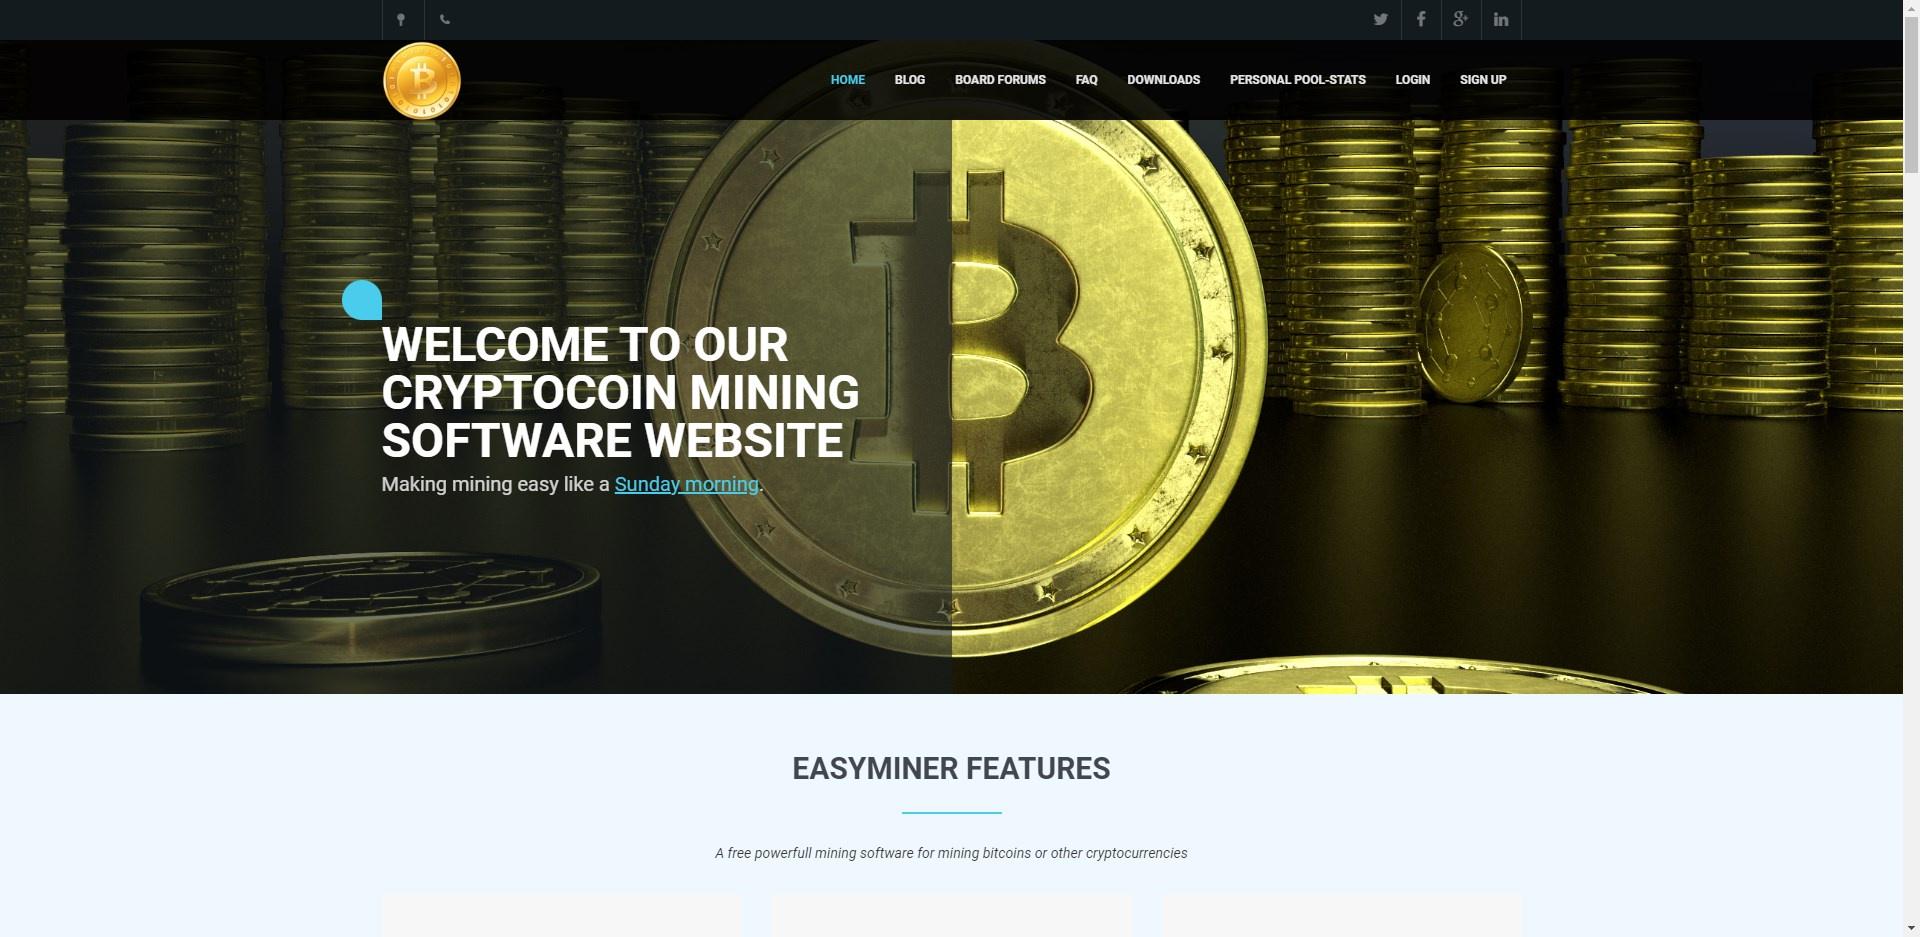 Easy Miner Website Review - CryptoSeptic.com